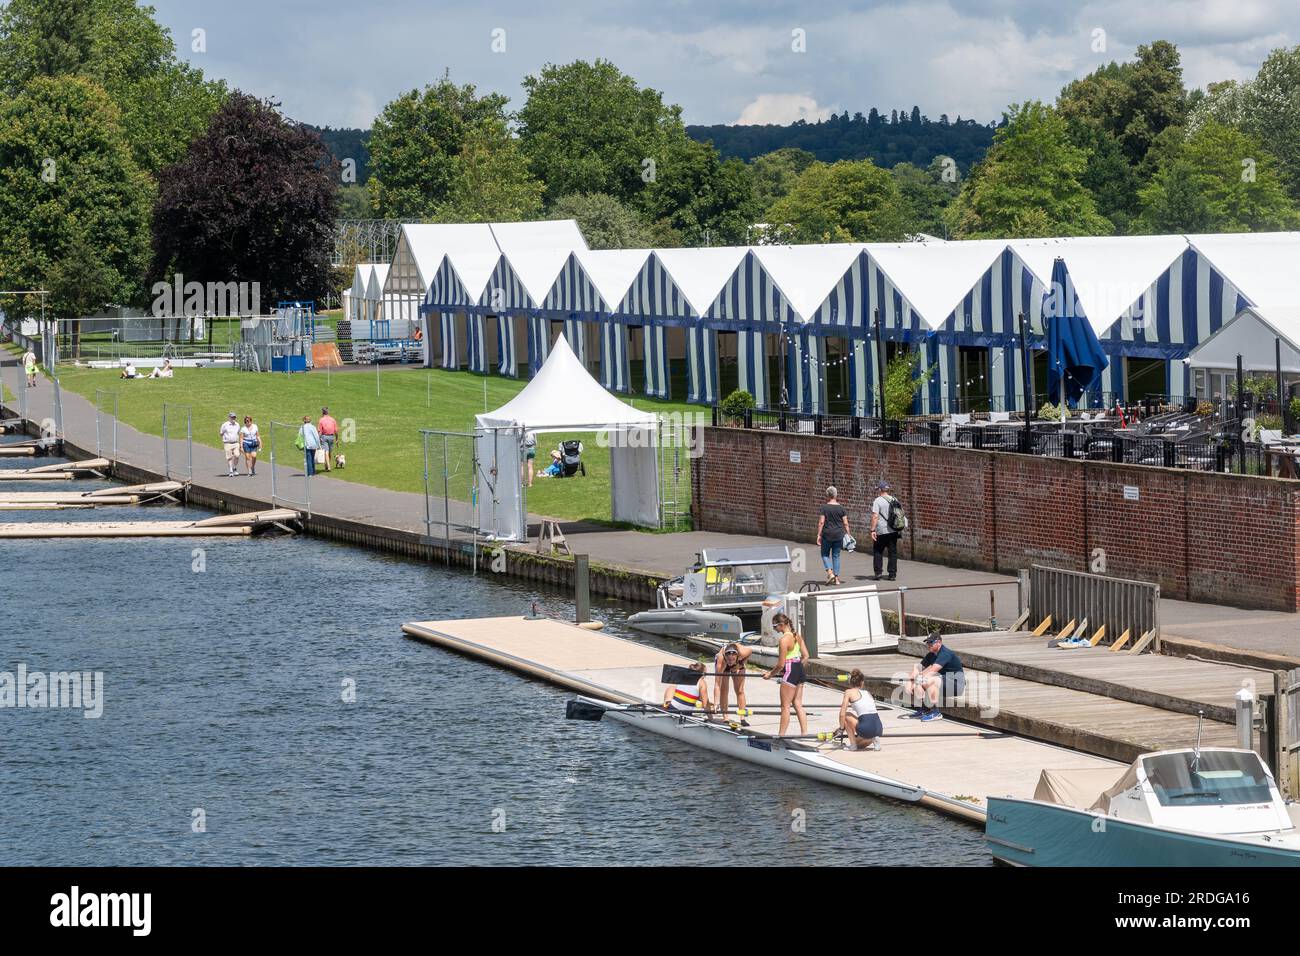 La Tamise à Henley-on-Thames avec les tentes de bateau bleues et blanches et les rameuses préparant leur bateau, Oxfordshire, Angleterre, Royaume-Uni Banque D'Images